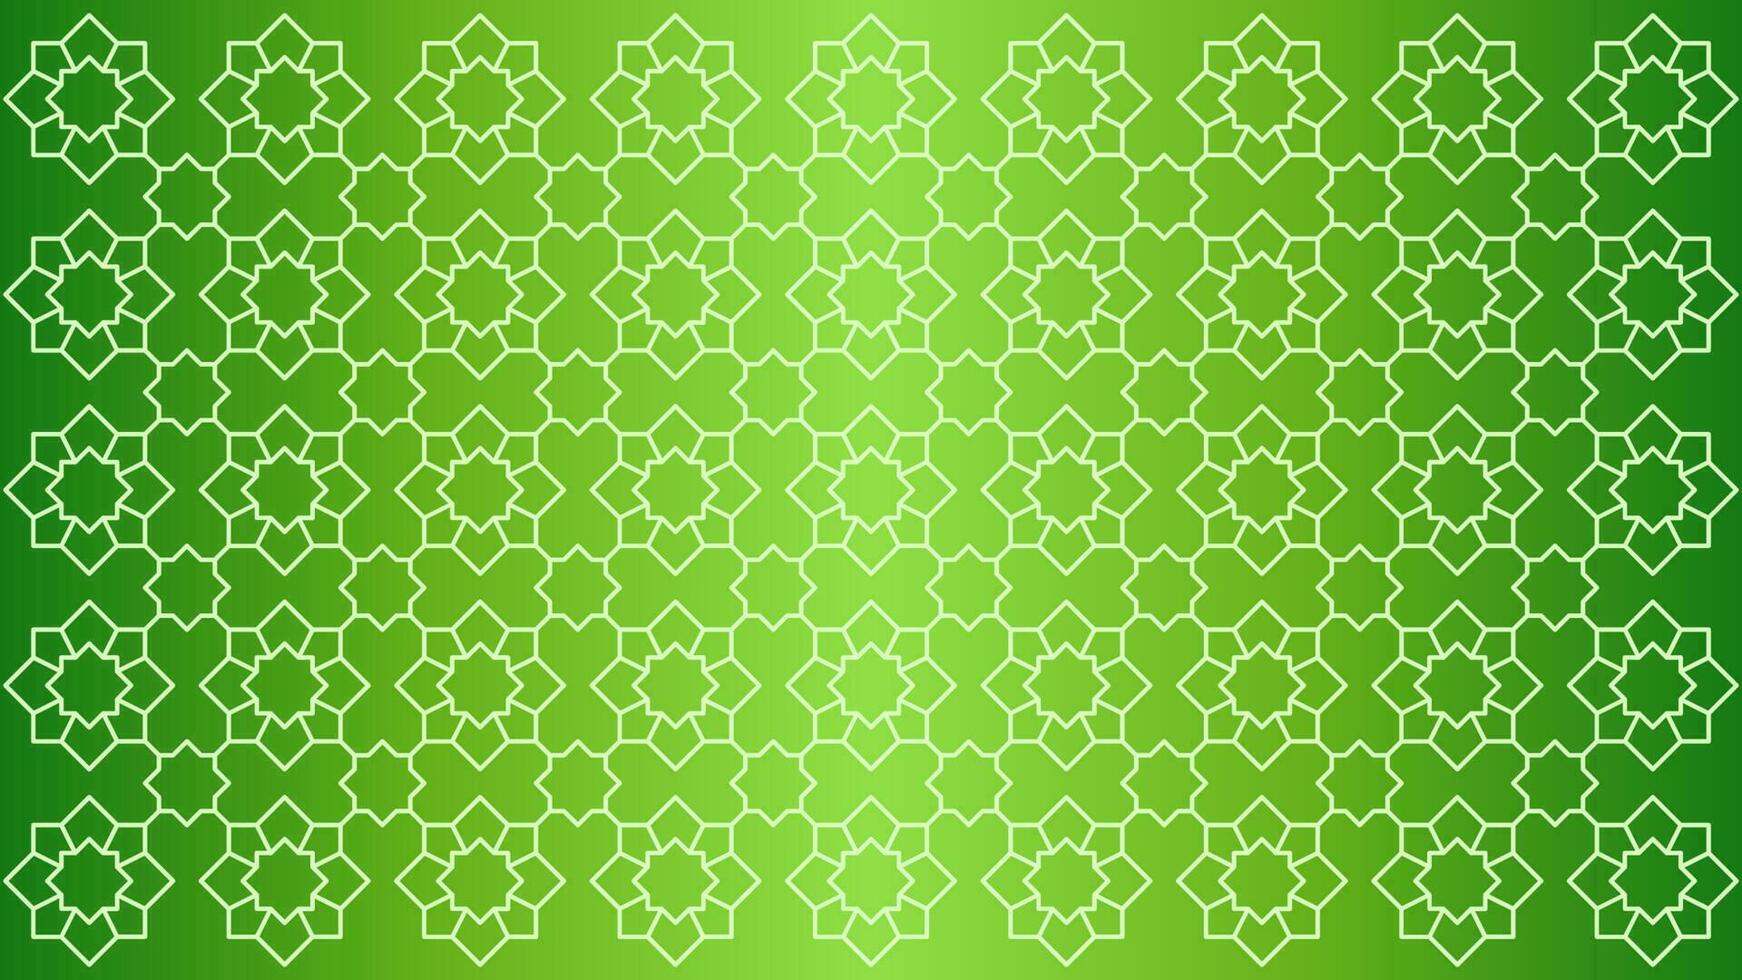 islamic mönster vektor illustration för islam firande. islamic mönster för ramadan, eid, mubarak, eid al fitr och eid al adha. skinande arabesk mönster för muslim kultur och islam religion